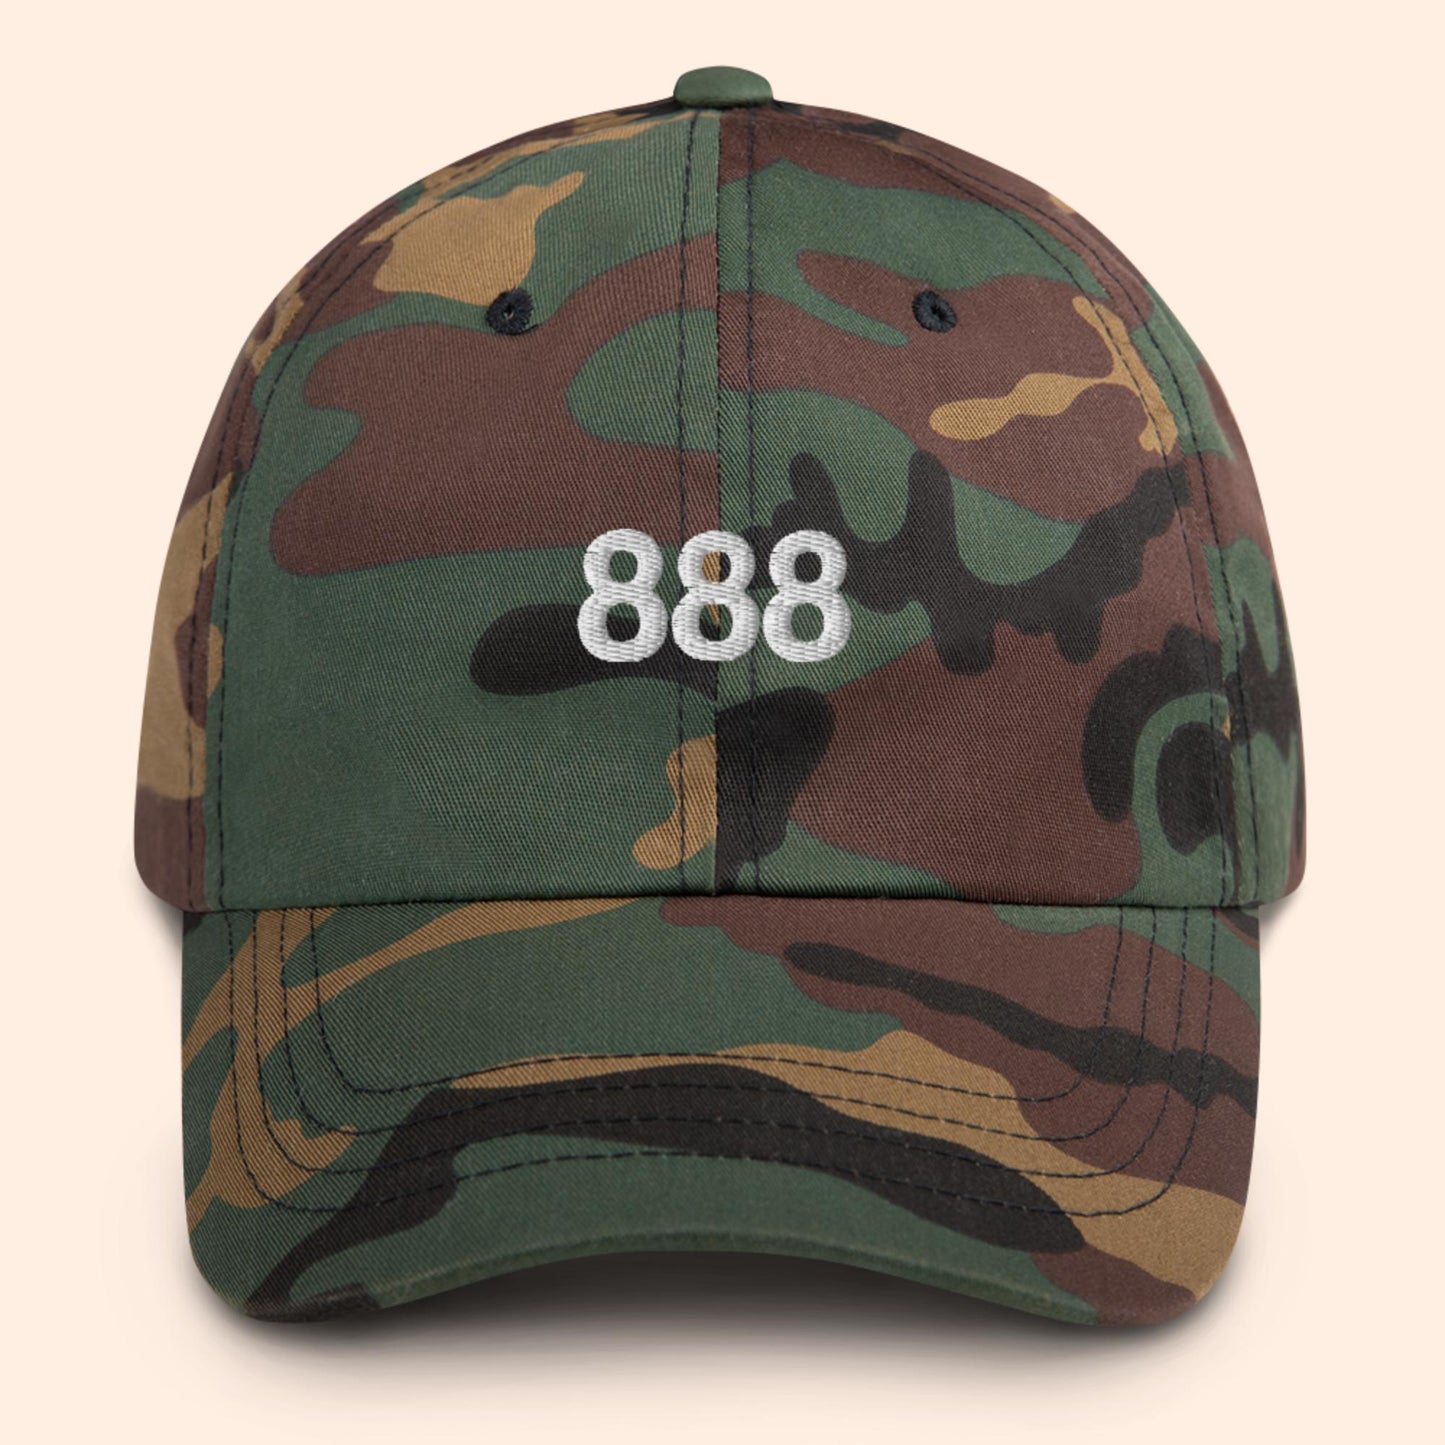 888 Angel Number Hat